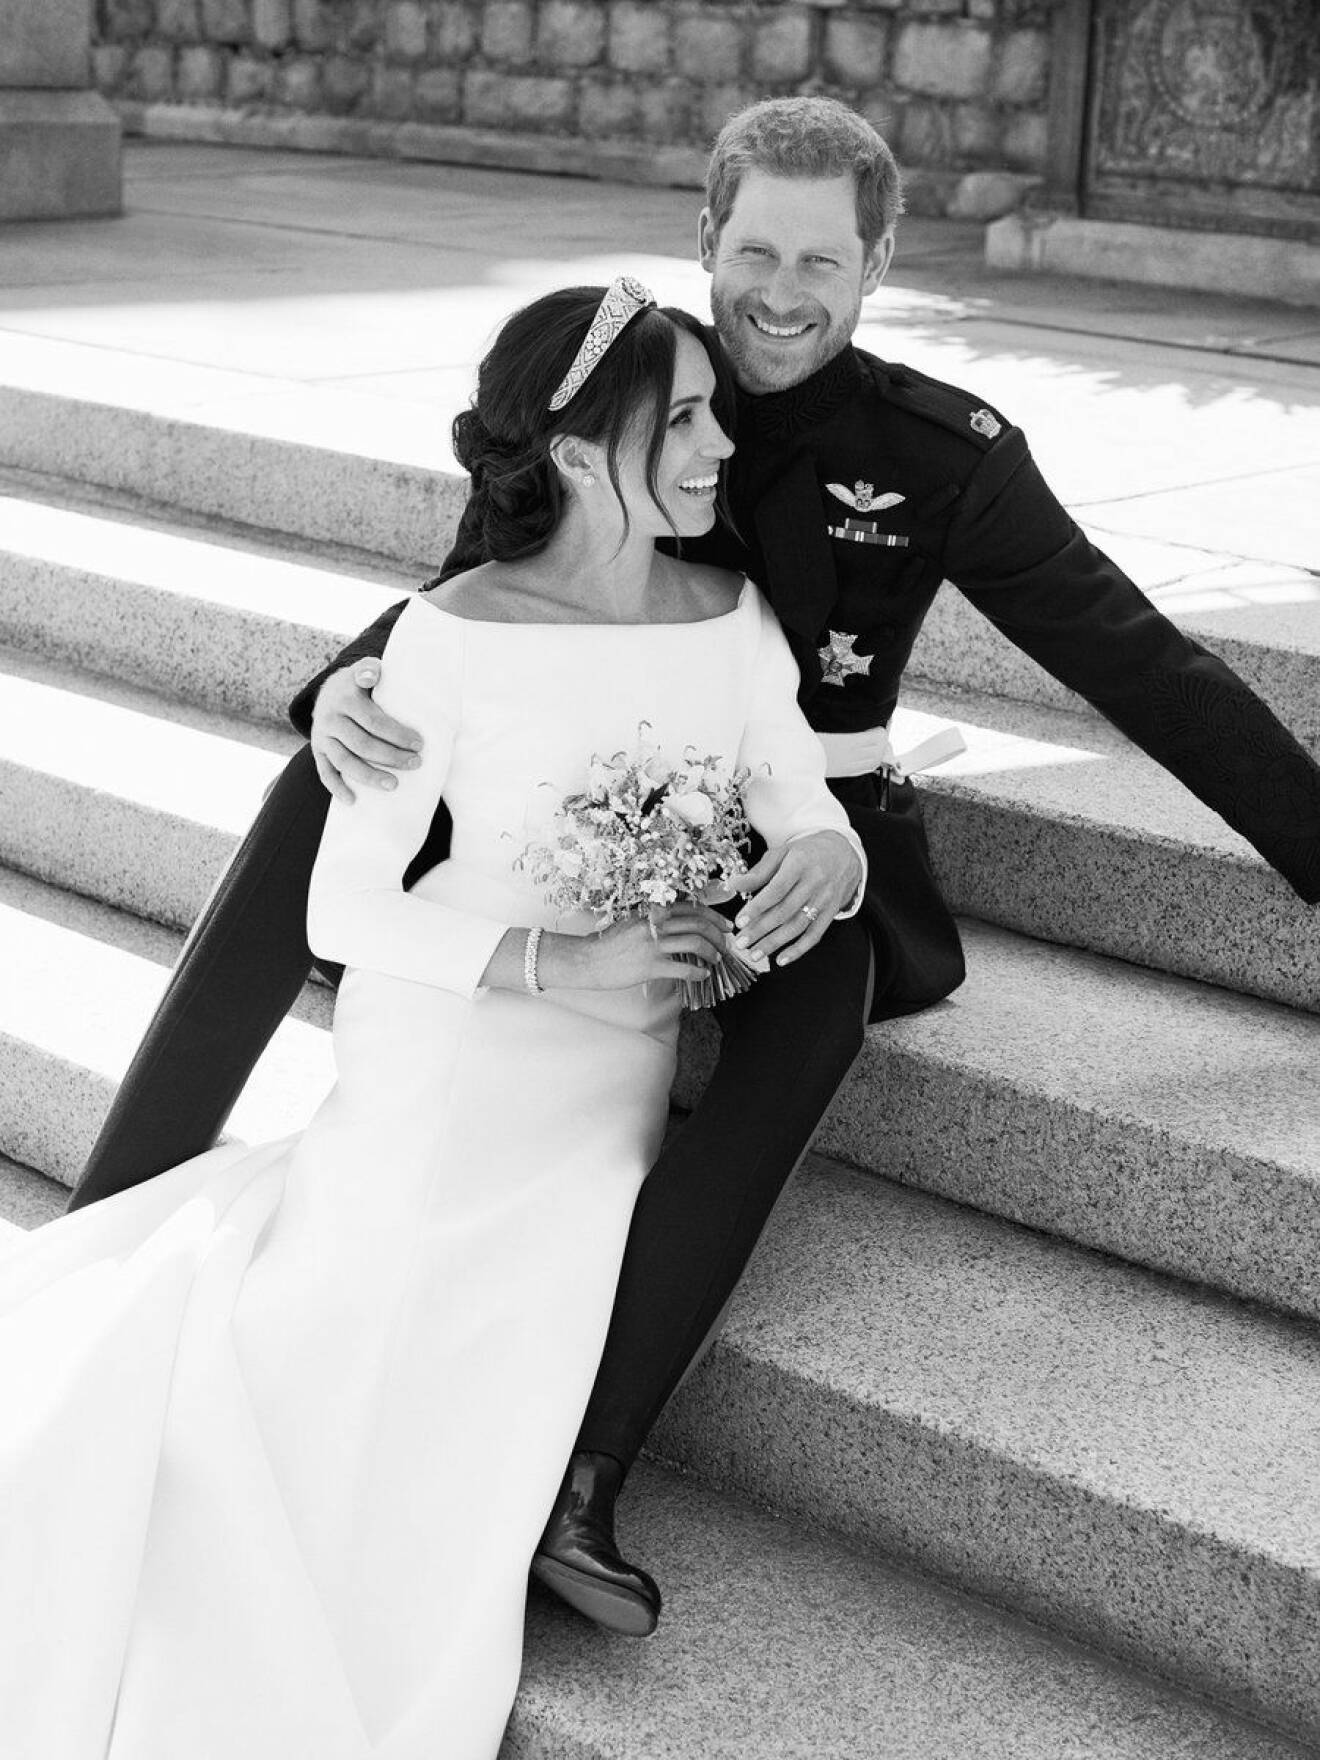 Ny svartvit bild på Meghan och Harry efter bröllopet